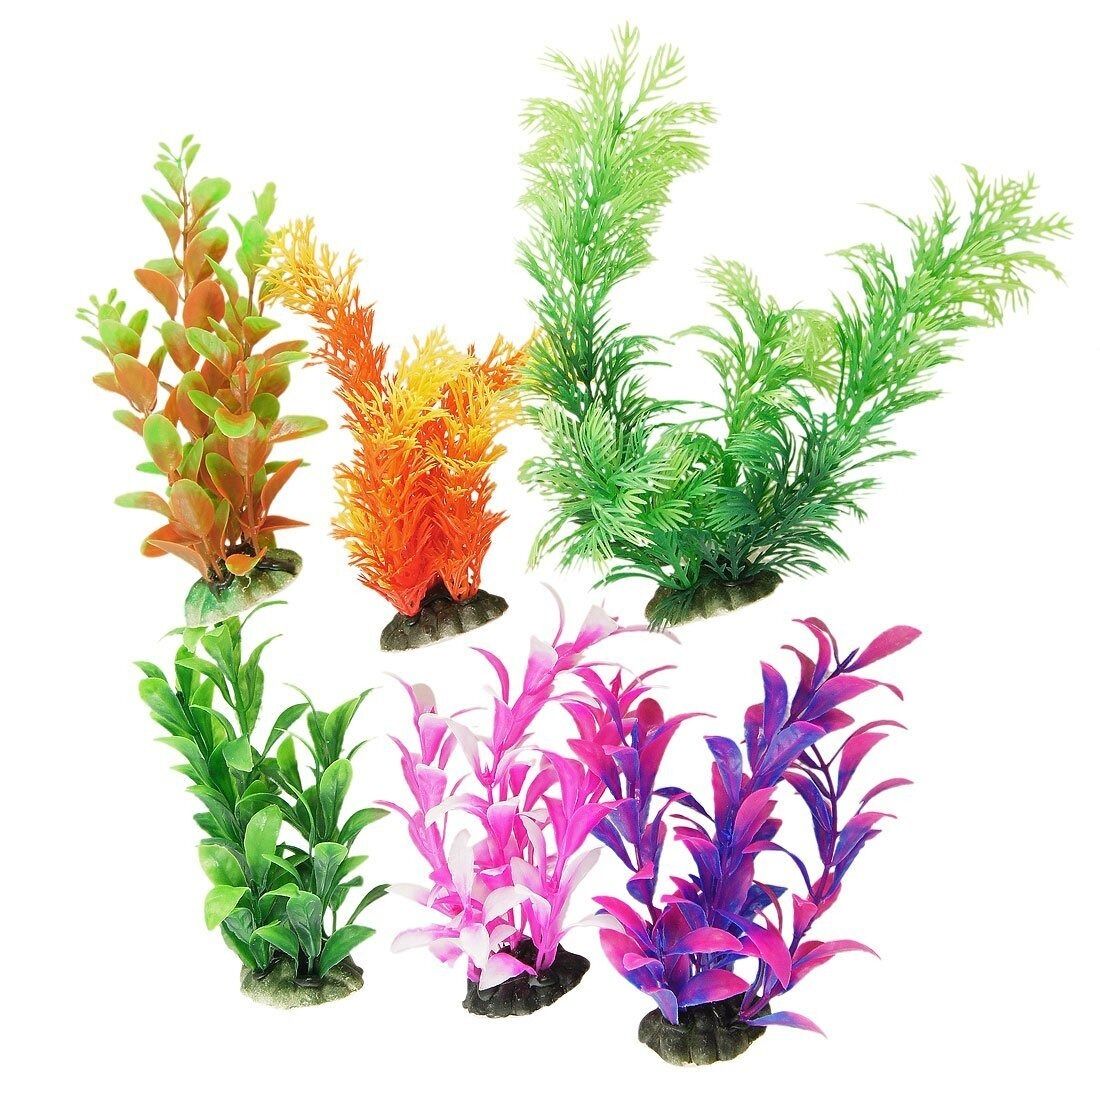 6 Pcs Color Realistic Decorative Aquarium Fish Tank Ornament Plastic Plants